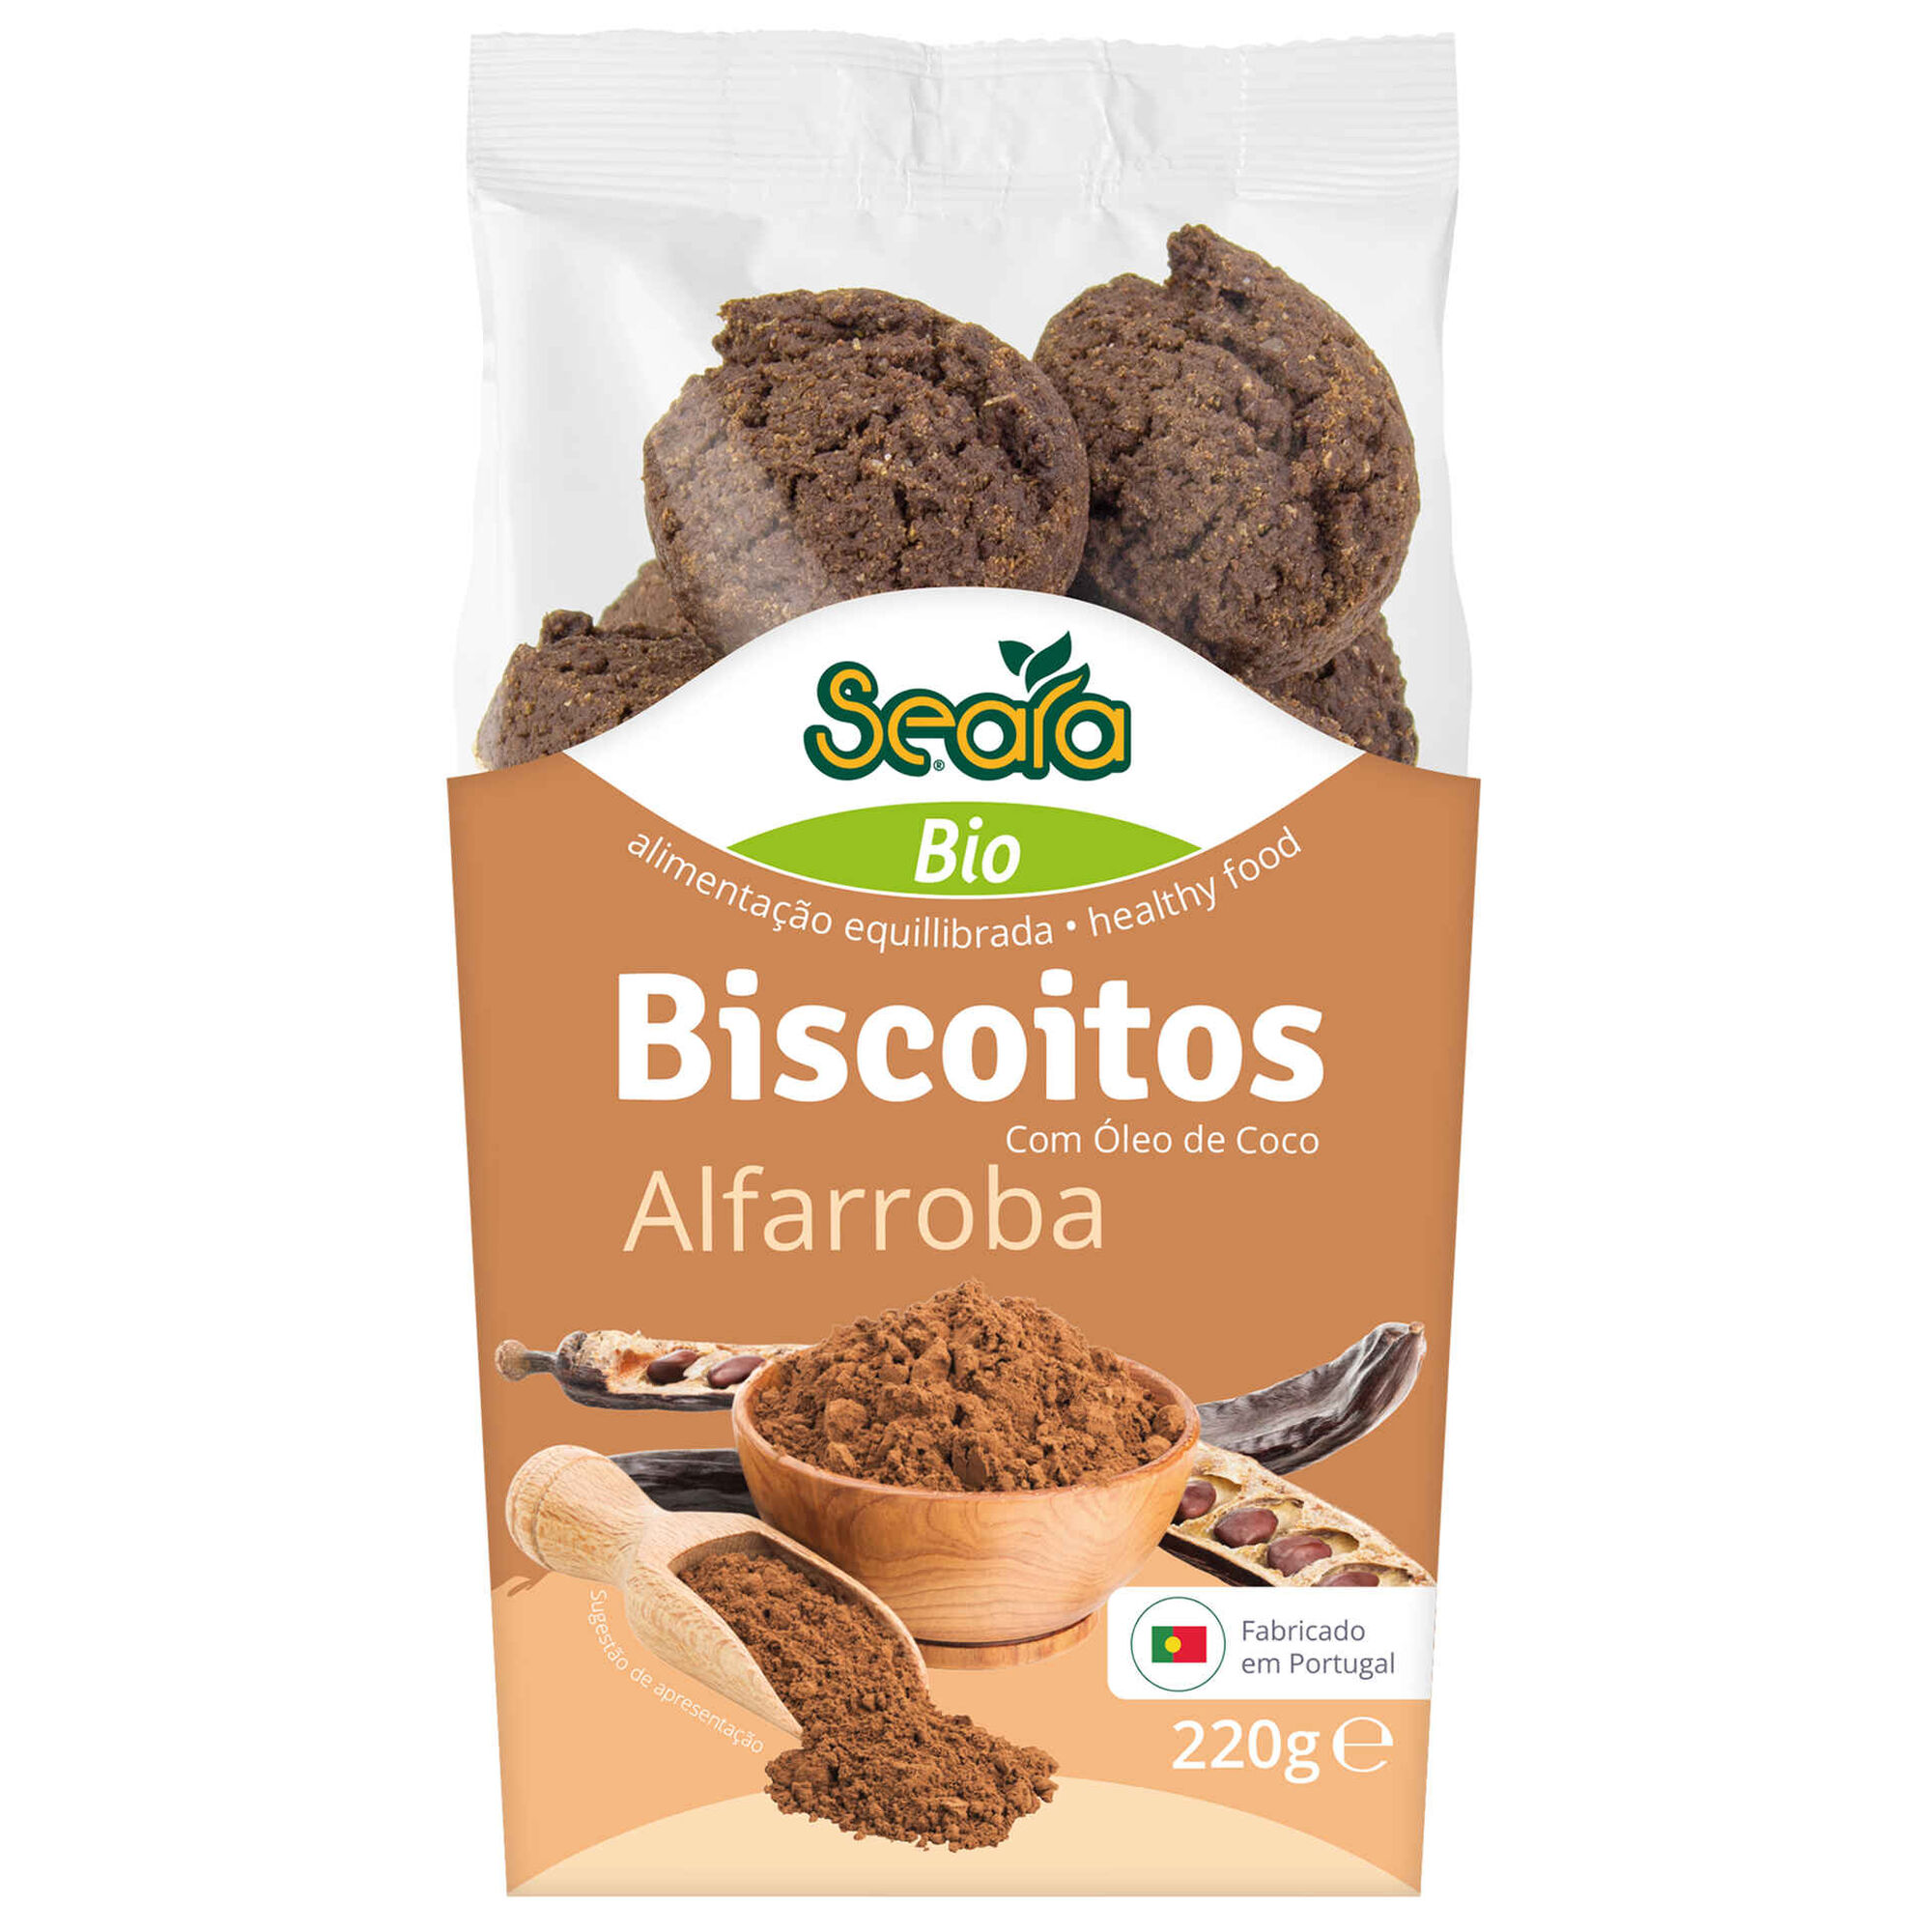 Biscoitos Alfarroba